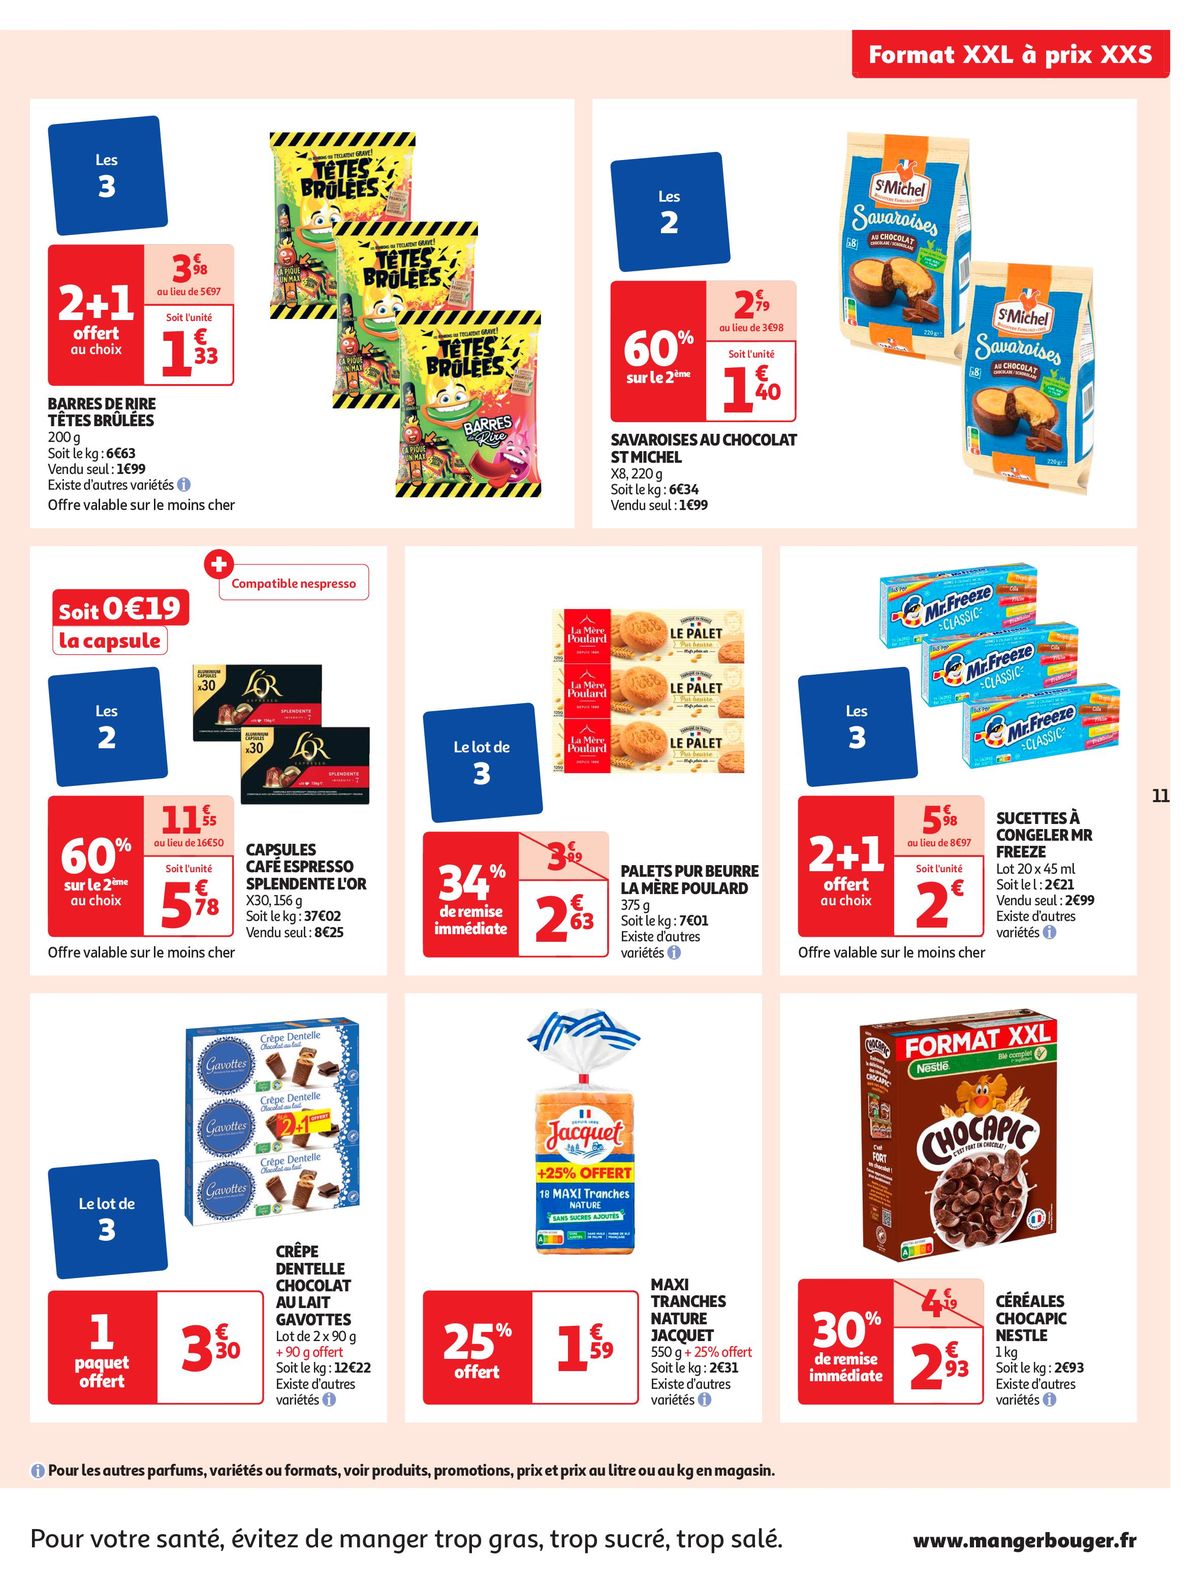 Catalogue Format XXL à prix XXS dans votre supermarché, page 00011